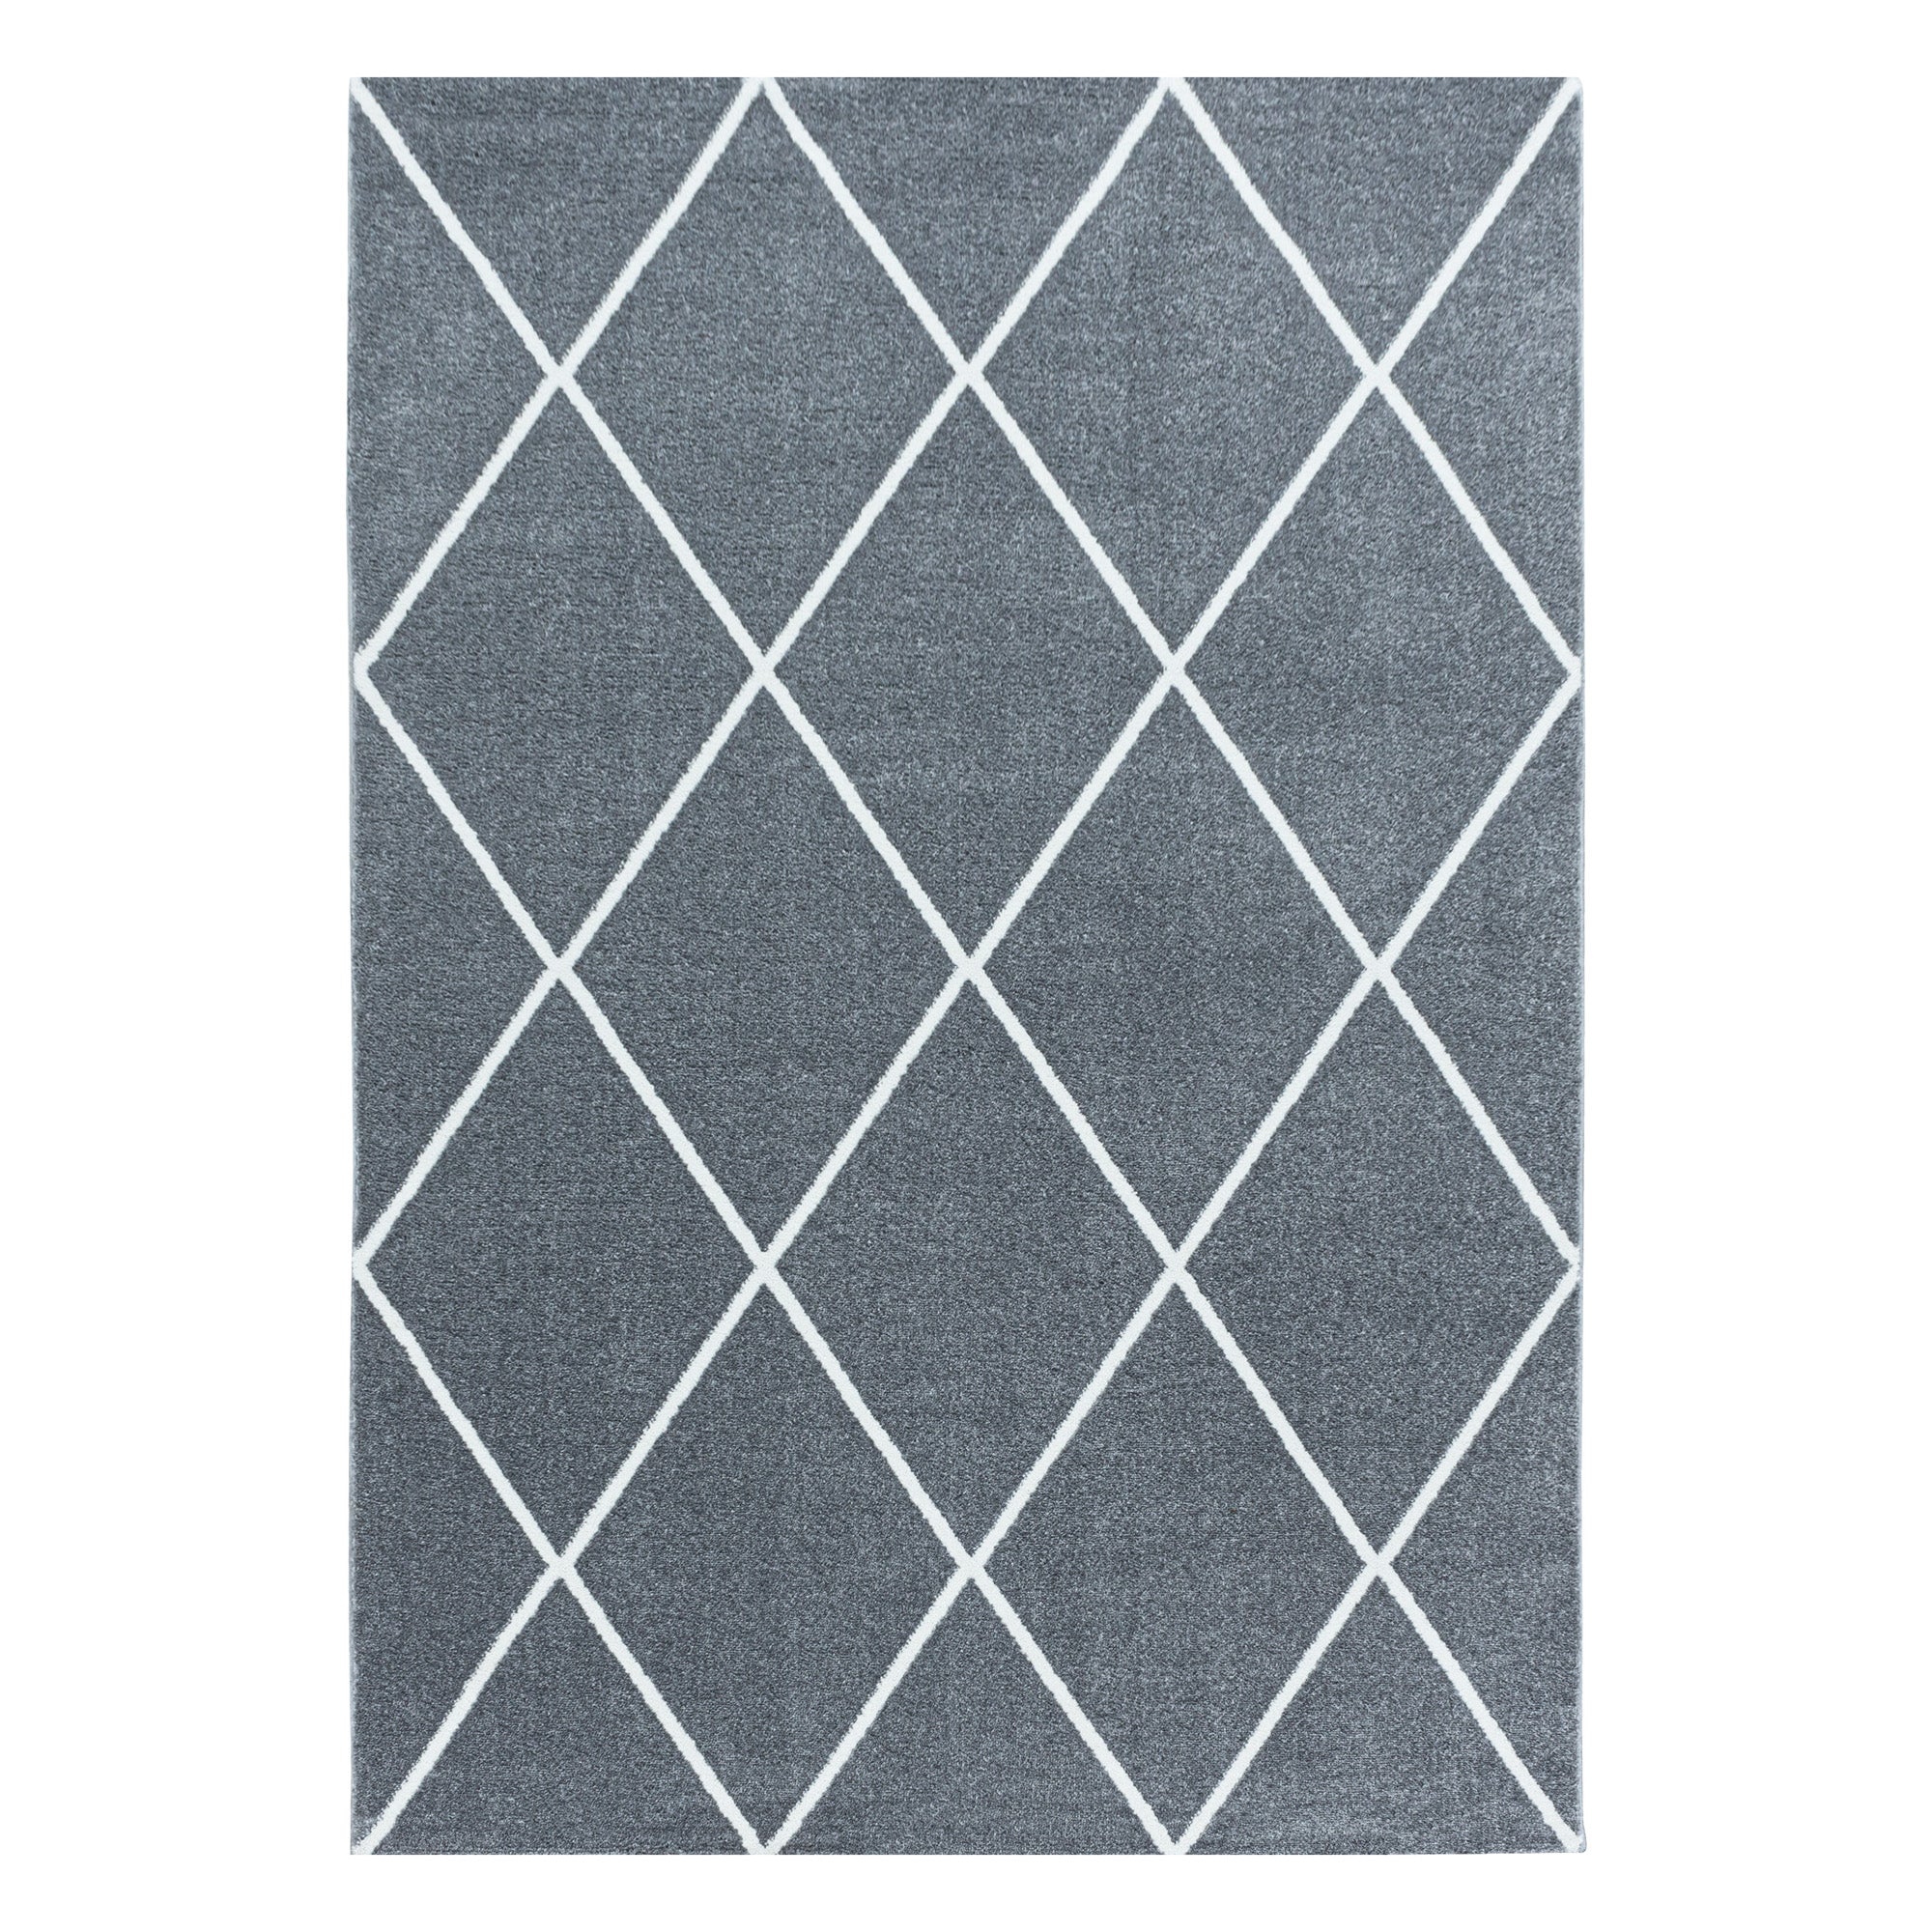 Kurzflor Teppich Silber Design Raute Modern Linien Wohnzimmerteppich Unifarben